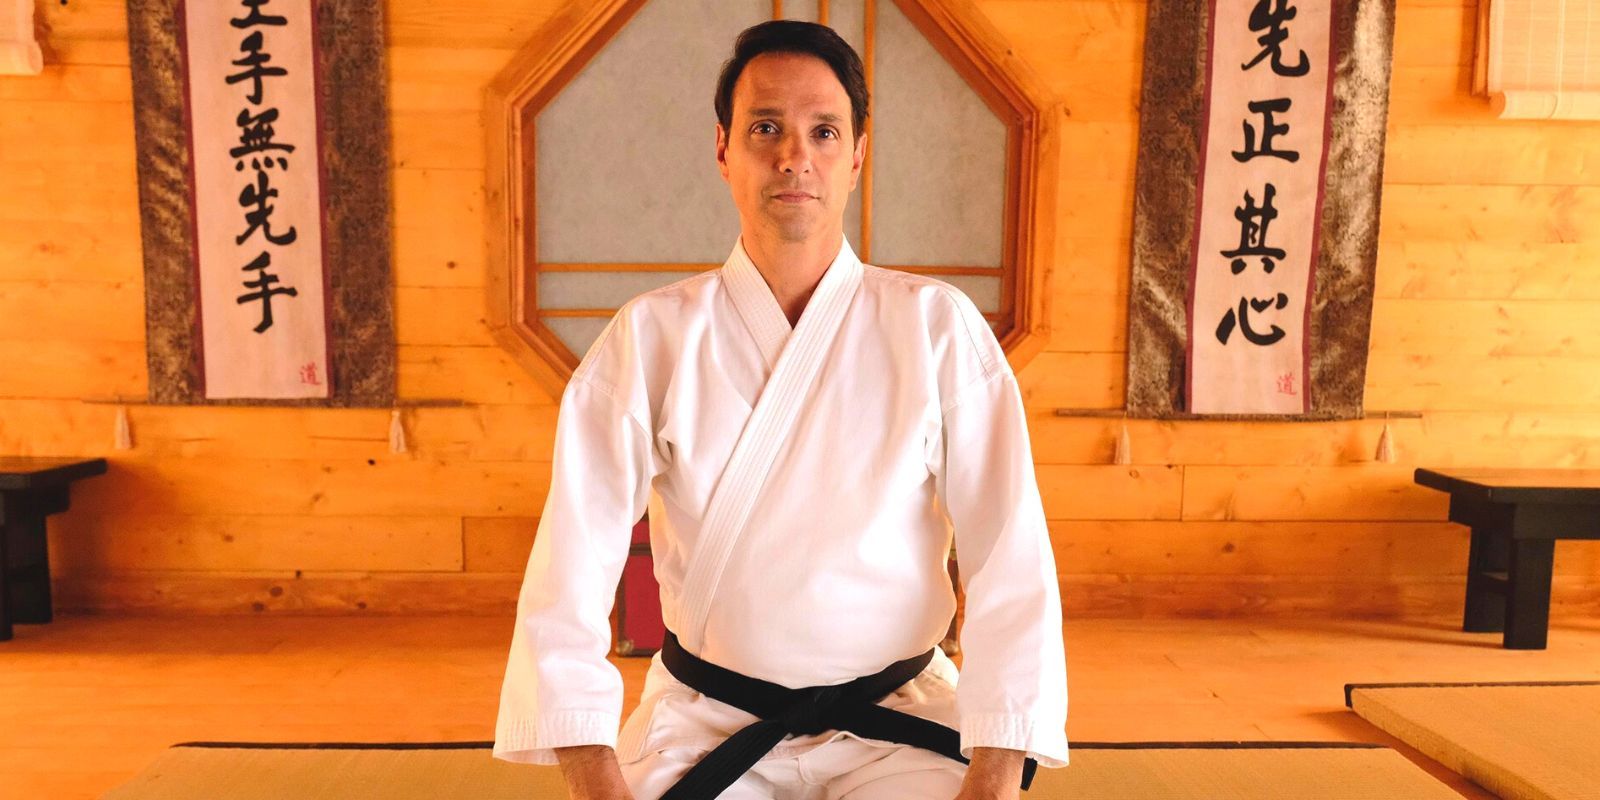 Ralph Macchio in full karate gi kneeling in a dojo in Cobra Kai